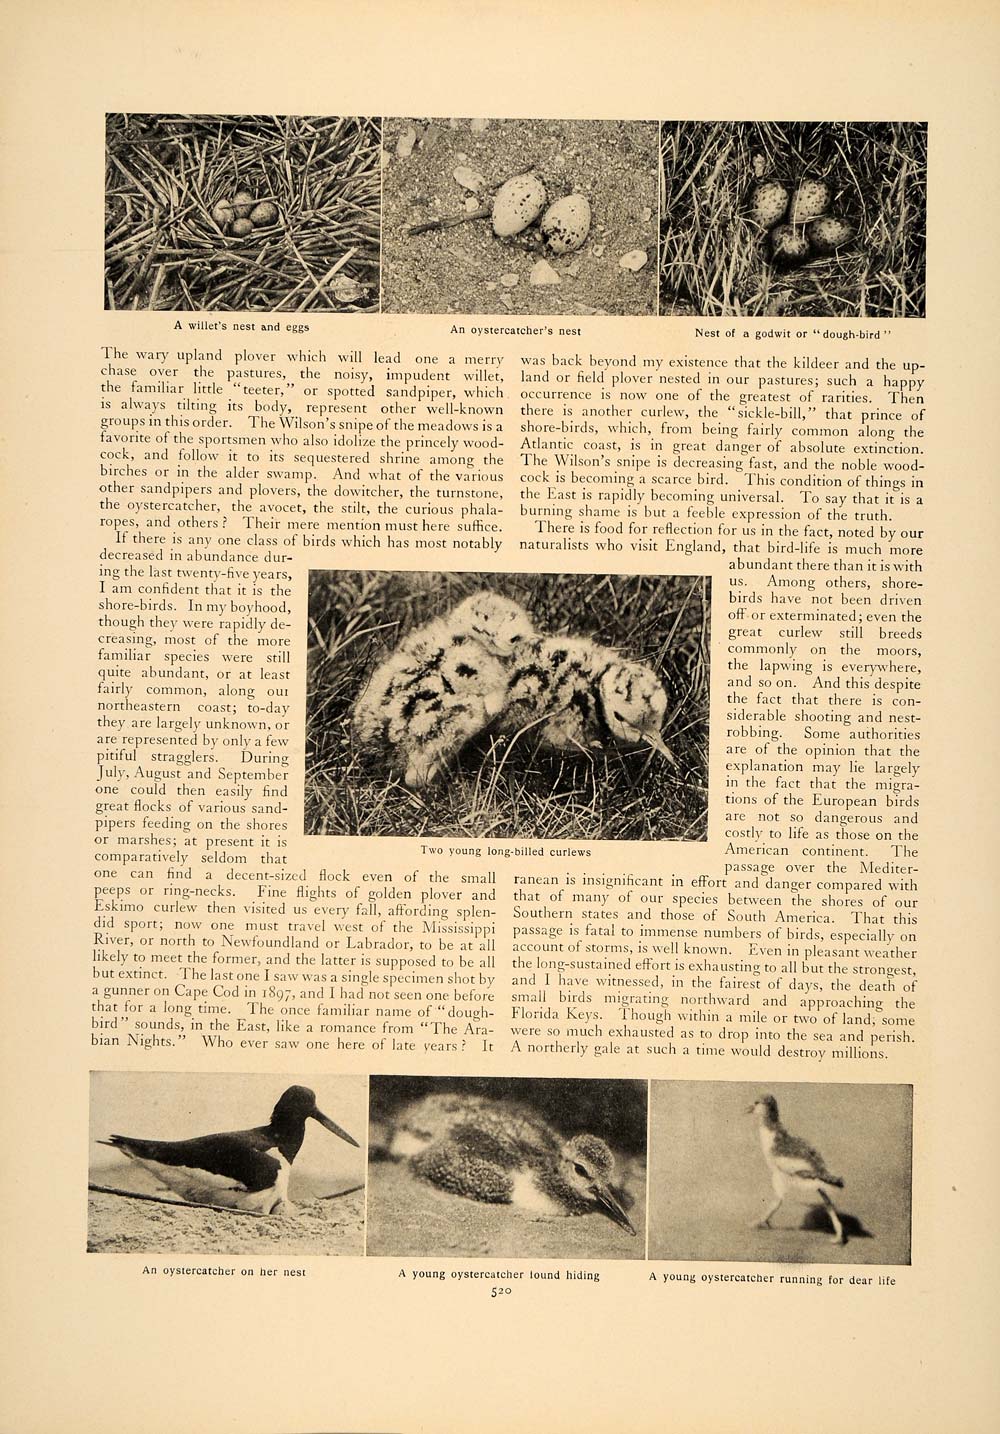 1906 Article Shore Bird Plover Herbert Job Curlew Nest Sandpiper Nest Egg CLA1